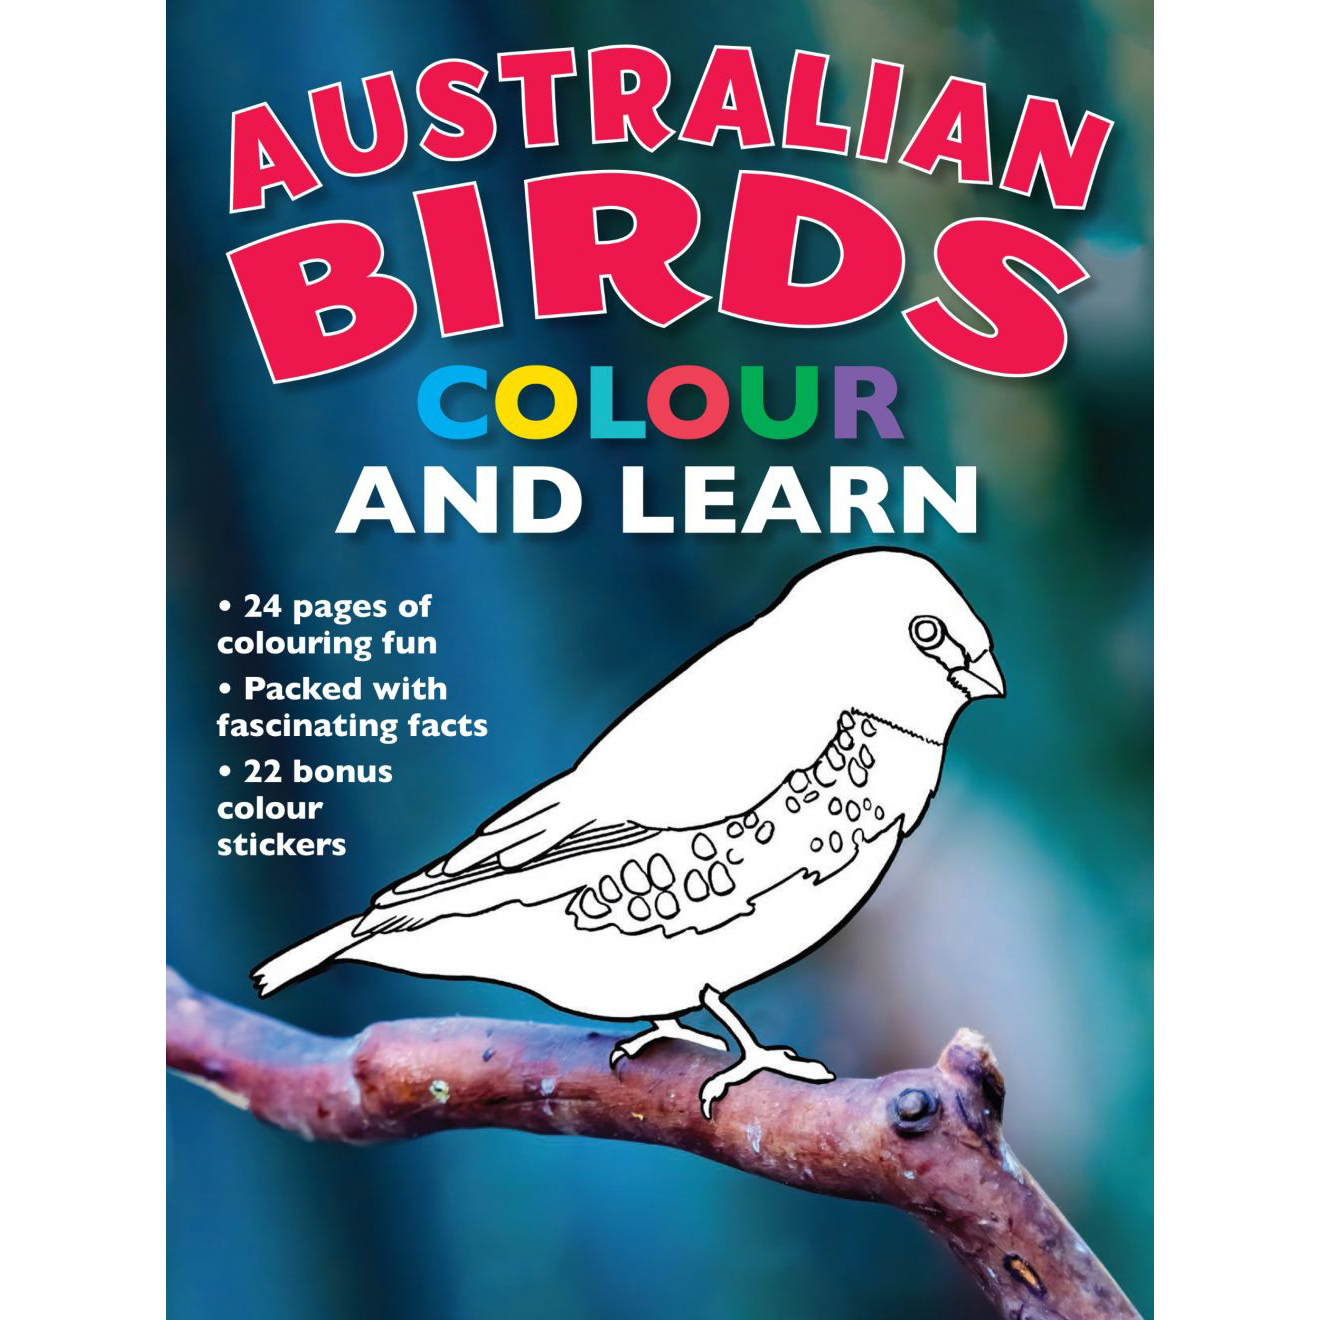 Australian Birds Colour And Learn